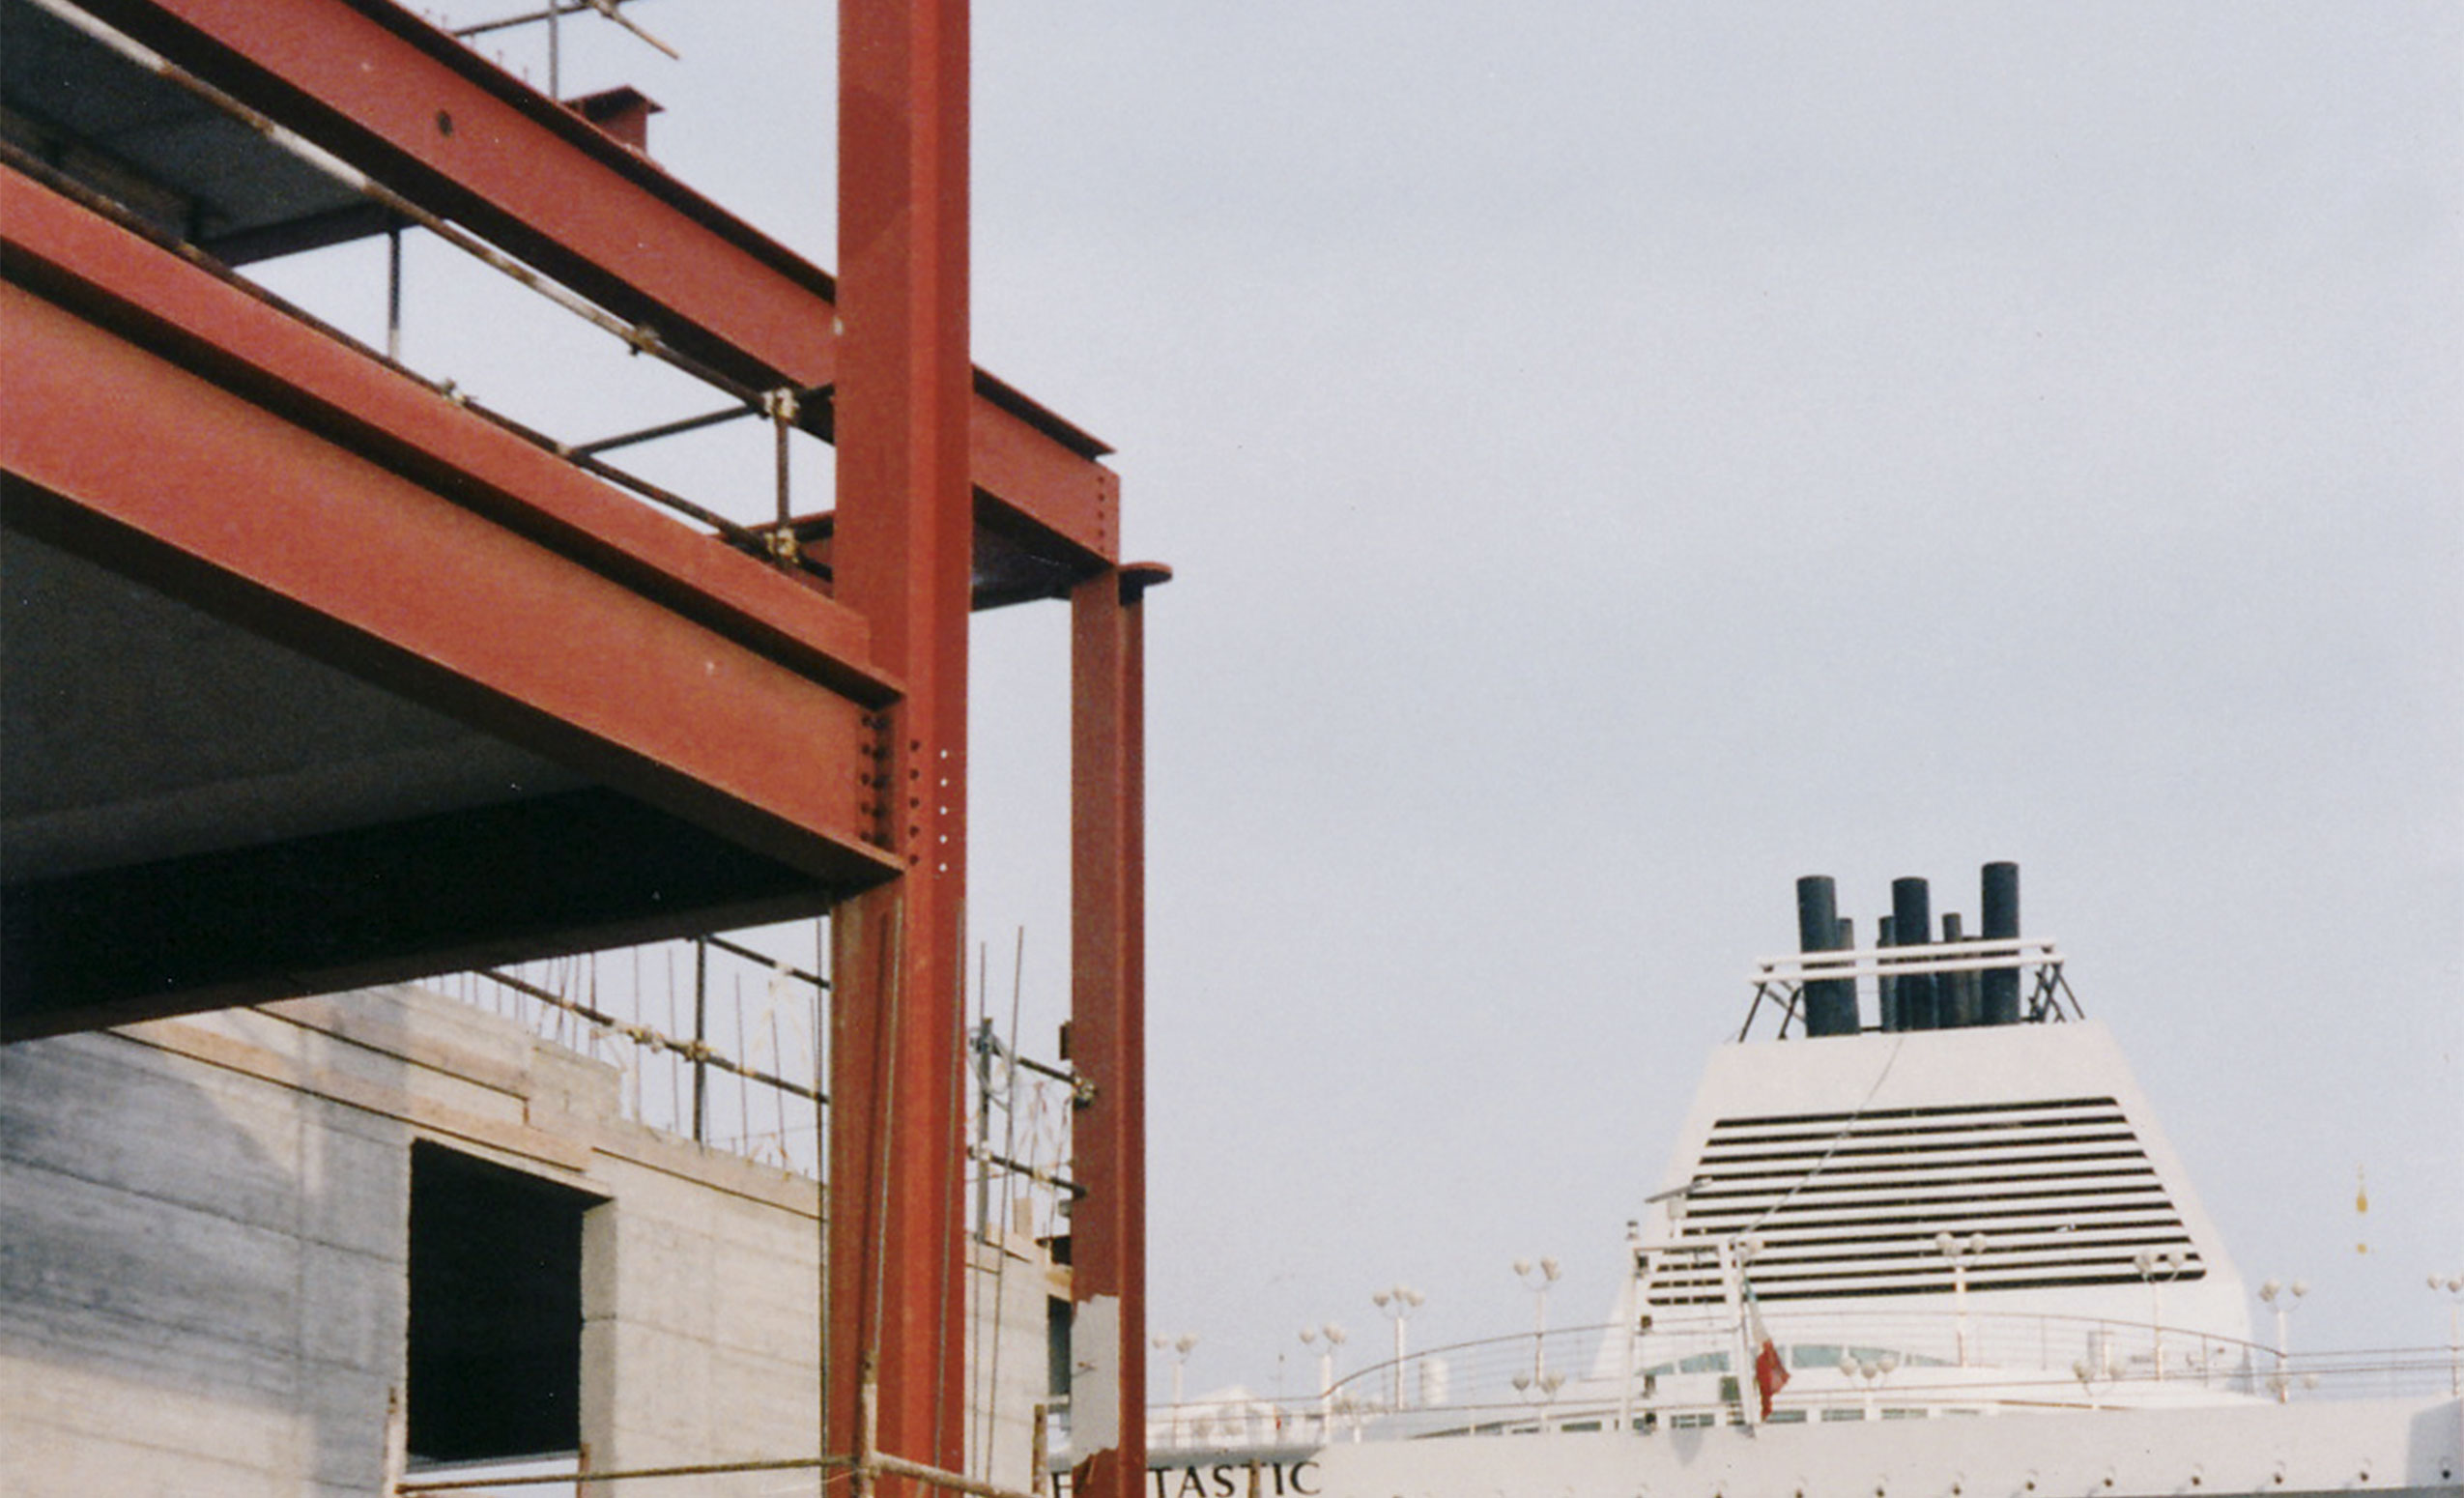 Stazioni Marittime SpA. Porto di Genova, Ponte Assereto. Costruzione nuovo Terminal Traghetti